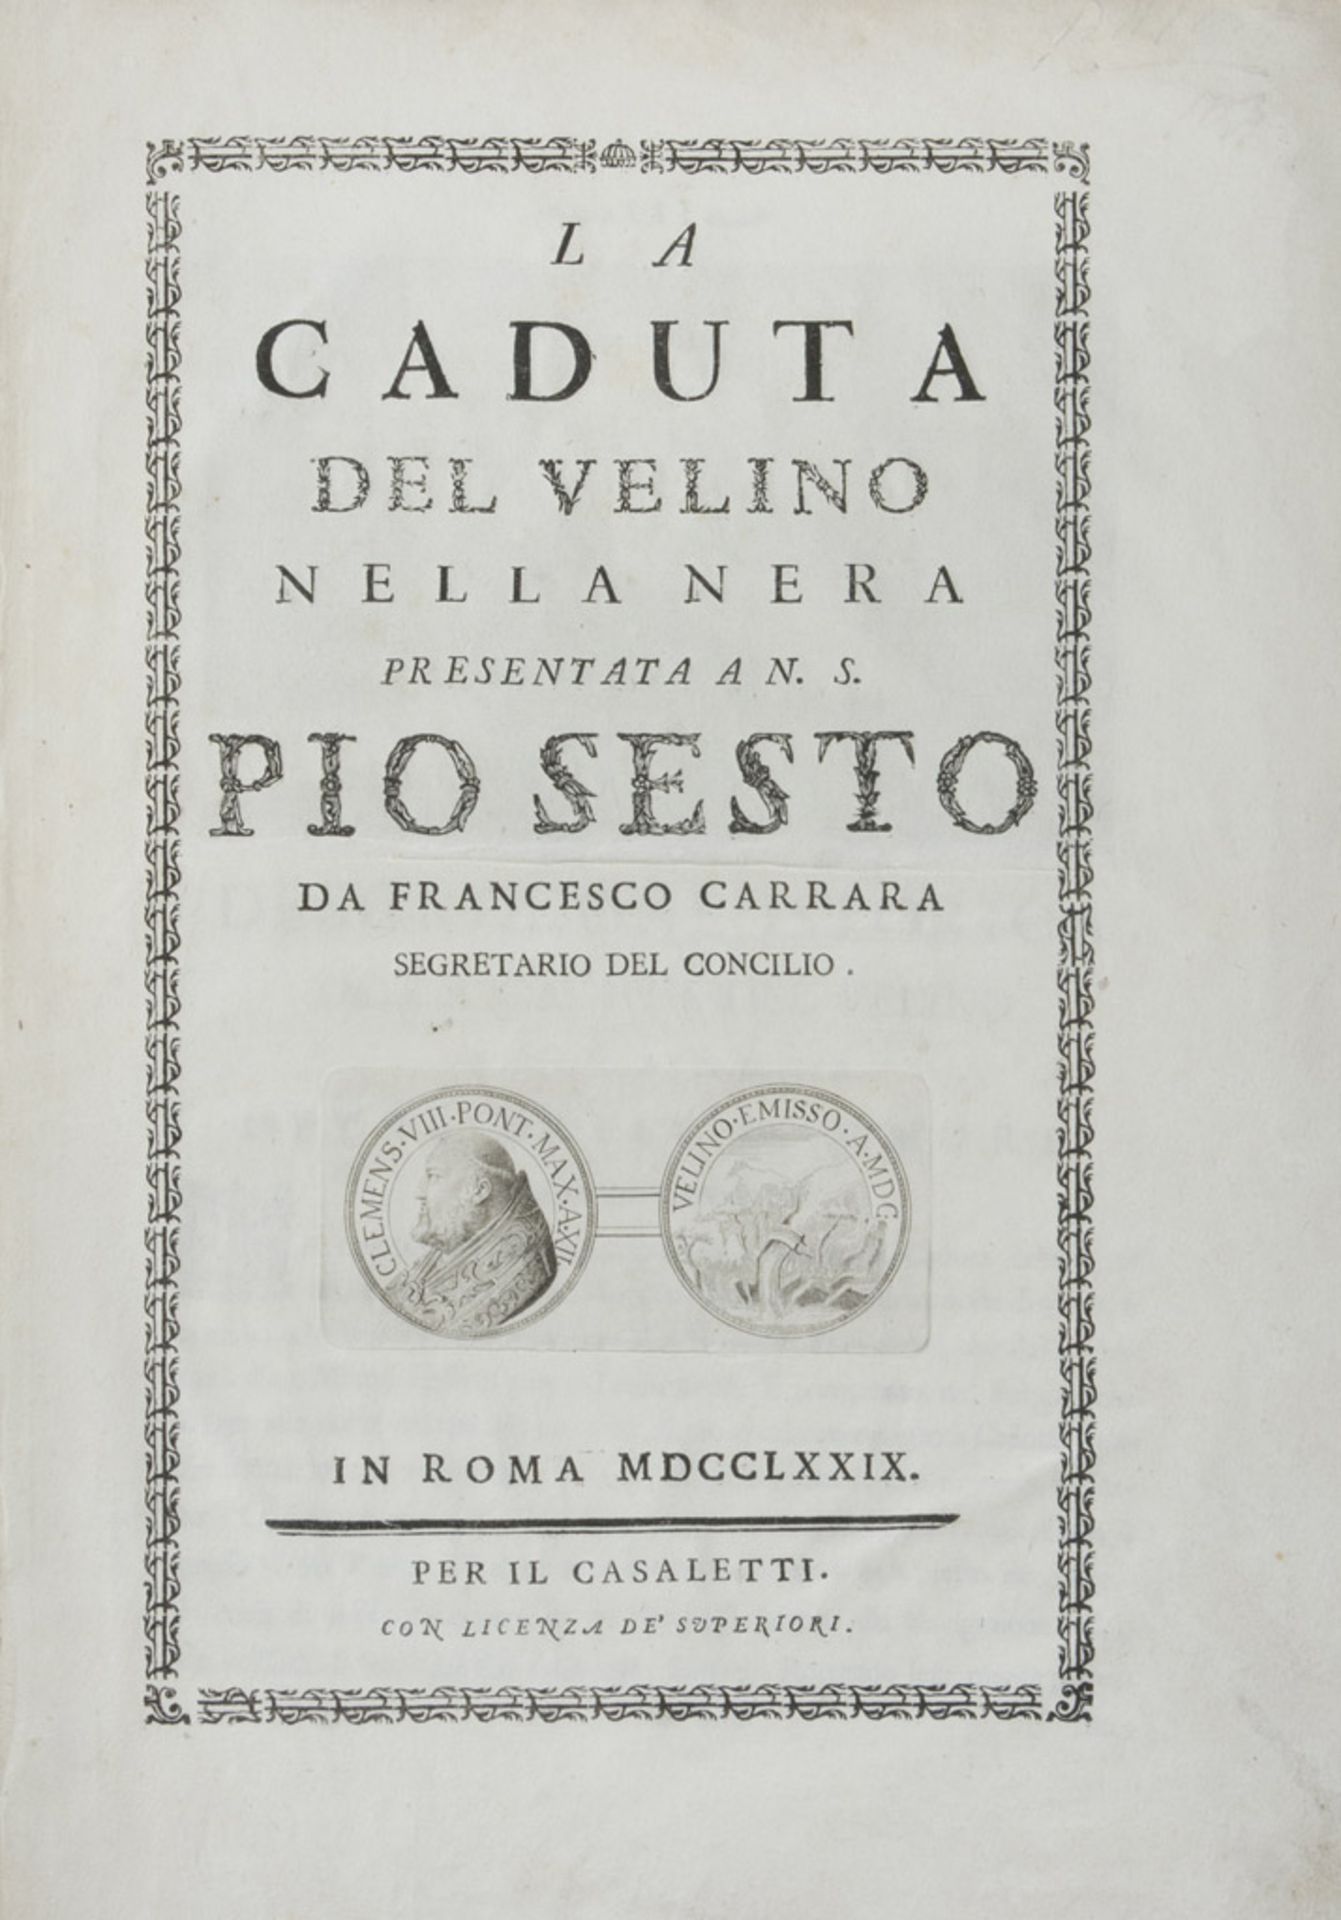 MARMORE WATERFALLS La caduta del Velino nella Nera. A small volume, with engravings and folded